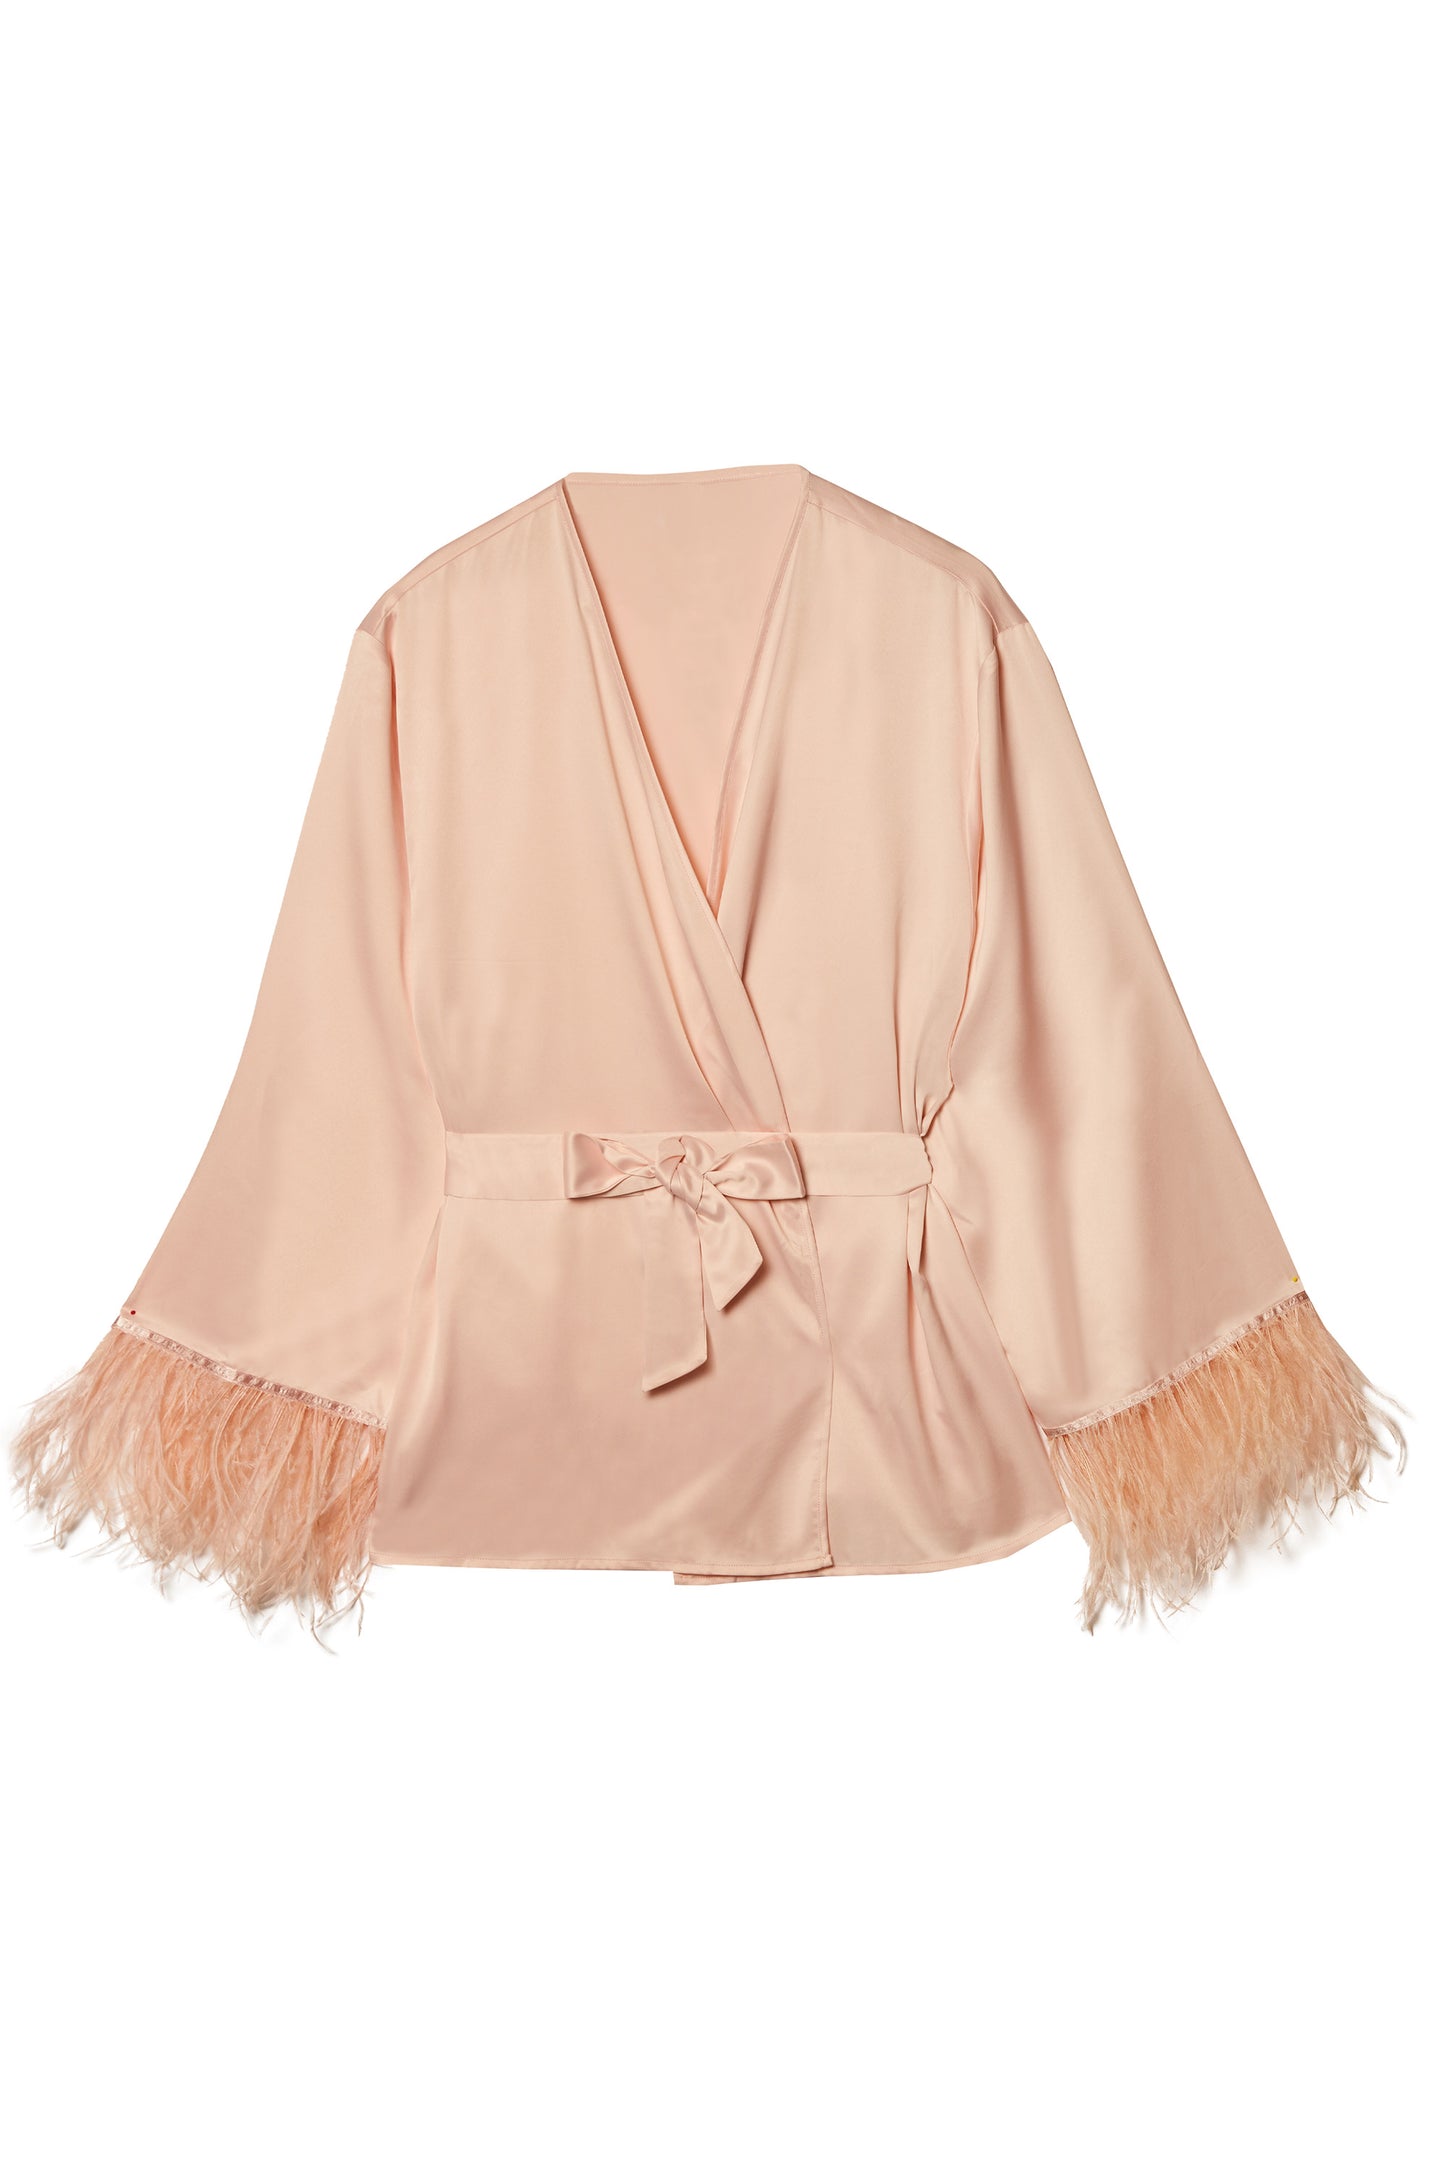 Cassiopeia Blush Pink Satin Robe - sizes 6-22